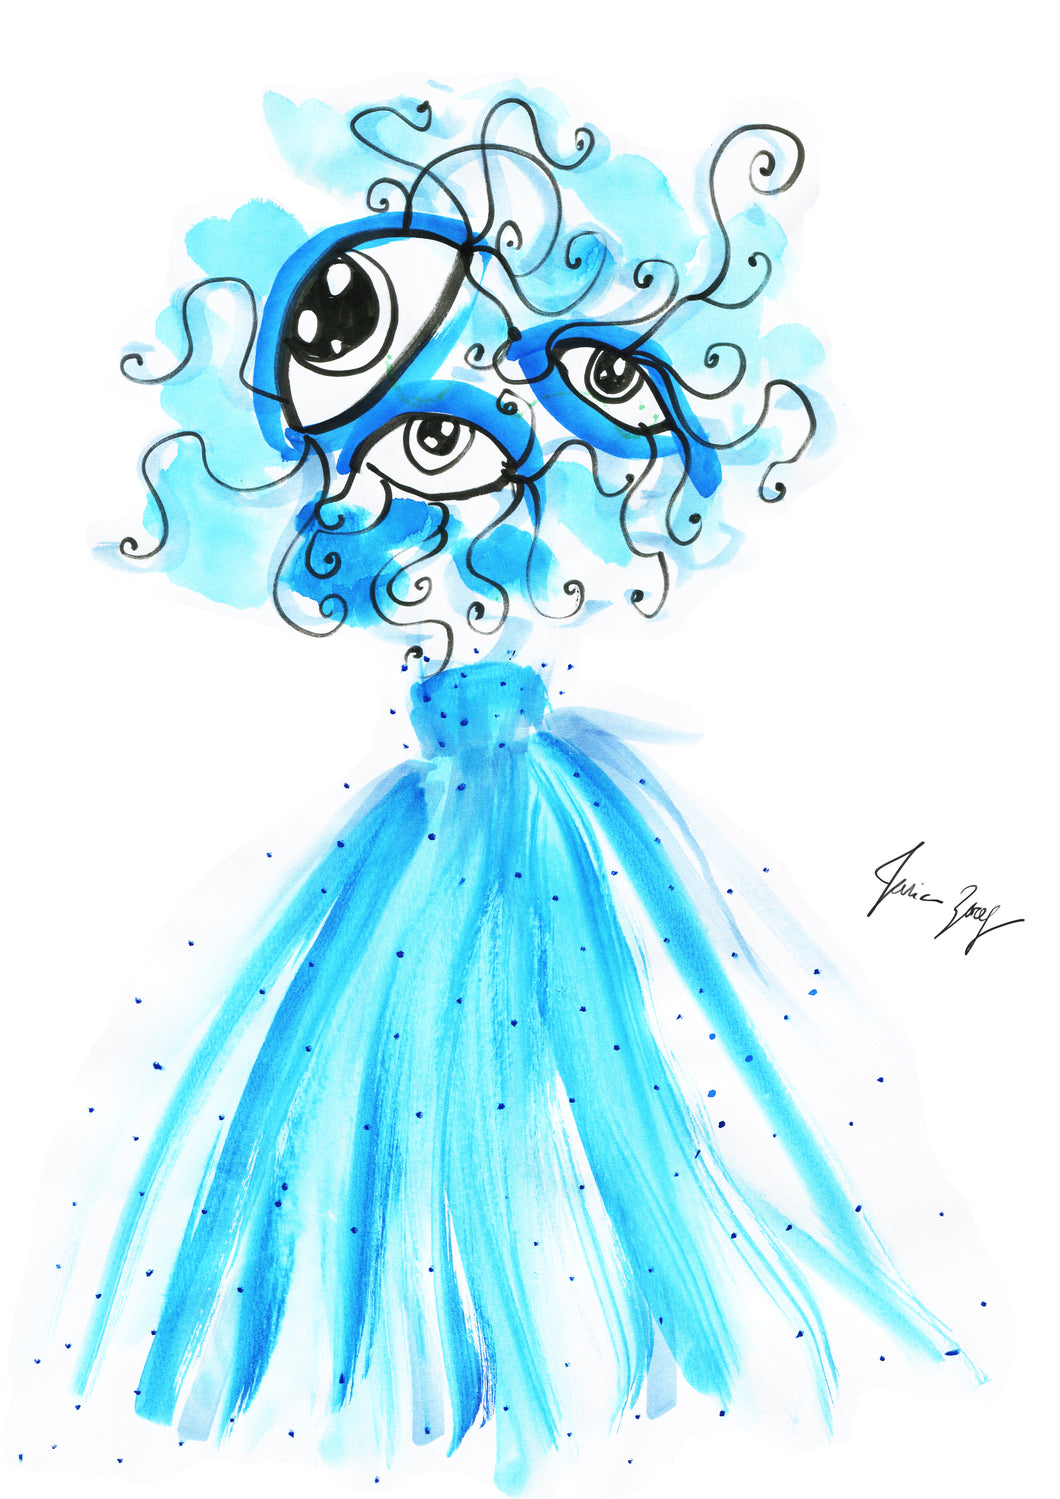 Cynderella Eye is Eye Art with 3 eyes wearing a blue dress by Talia Zoref